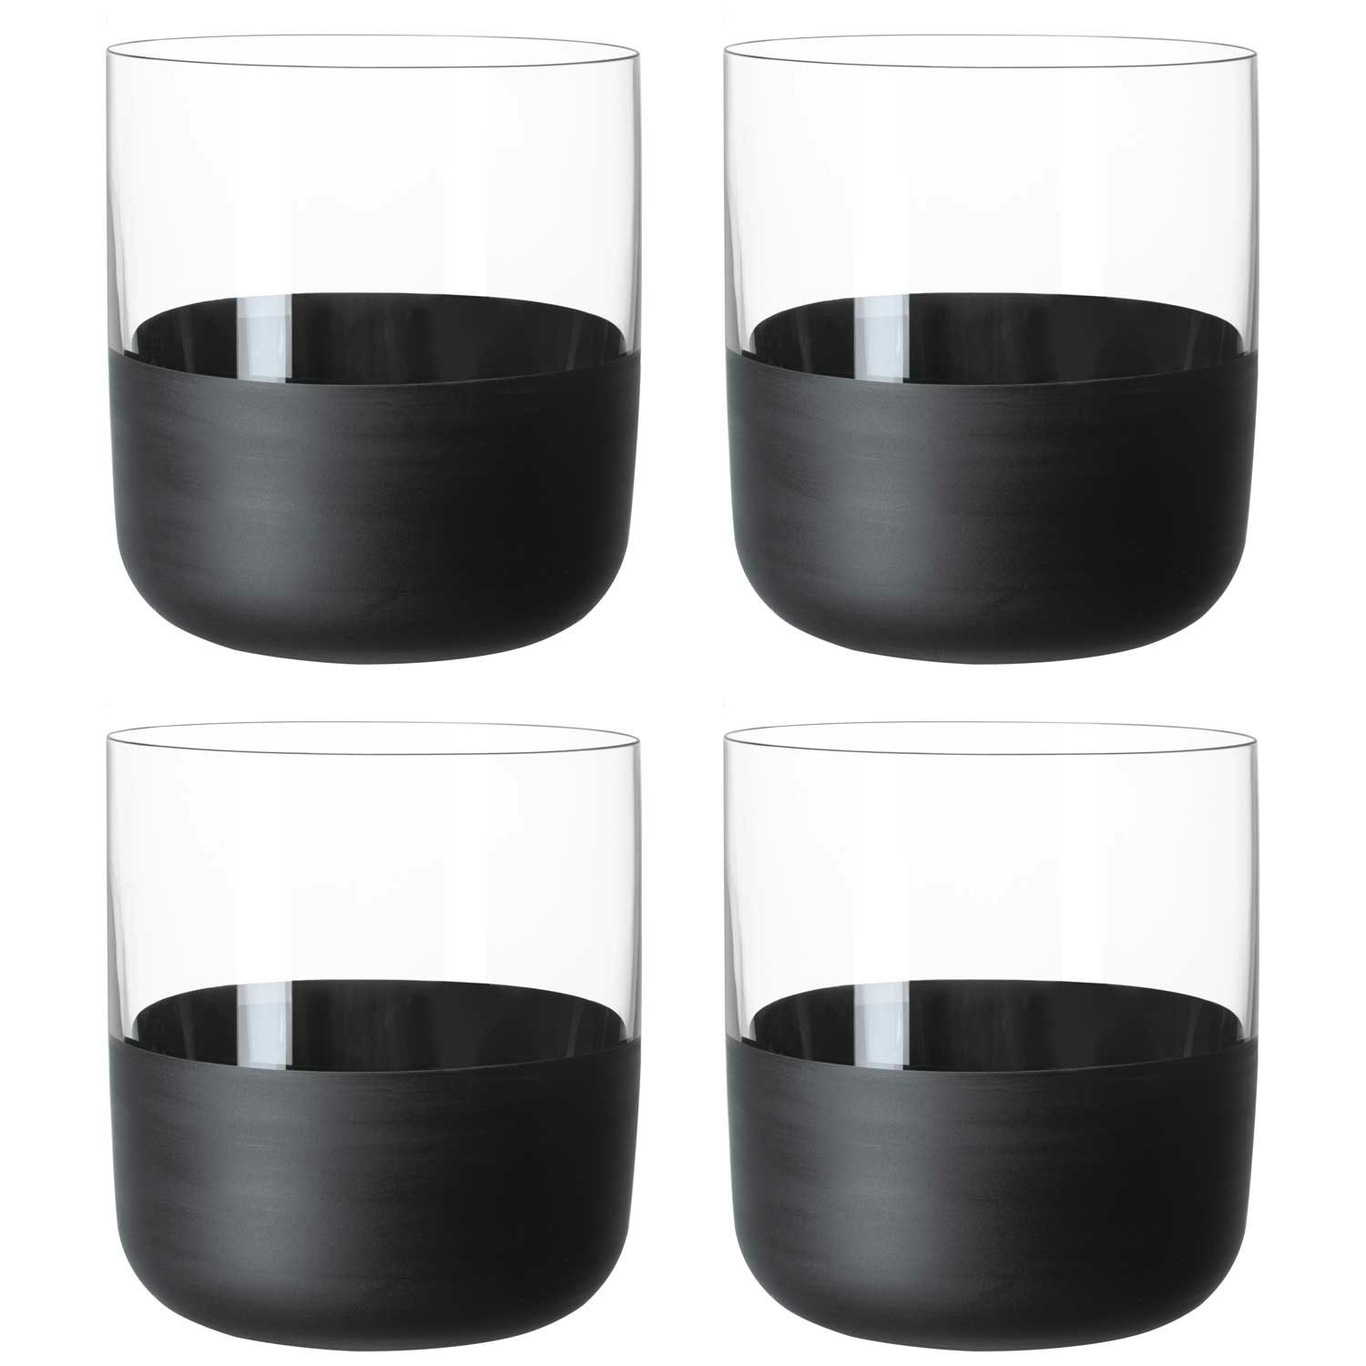 https://royaldesign.com/image/2/villeroy-boch-manufacture-rock-shot-glasses-4-cl-4-pack-0?w=800&quality=80